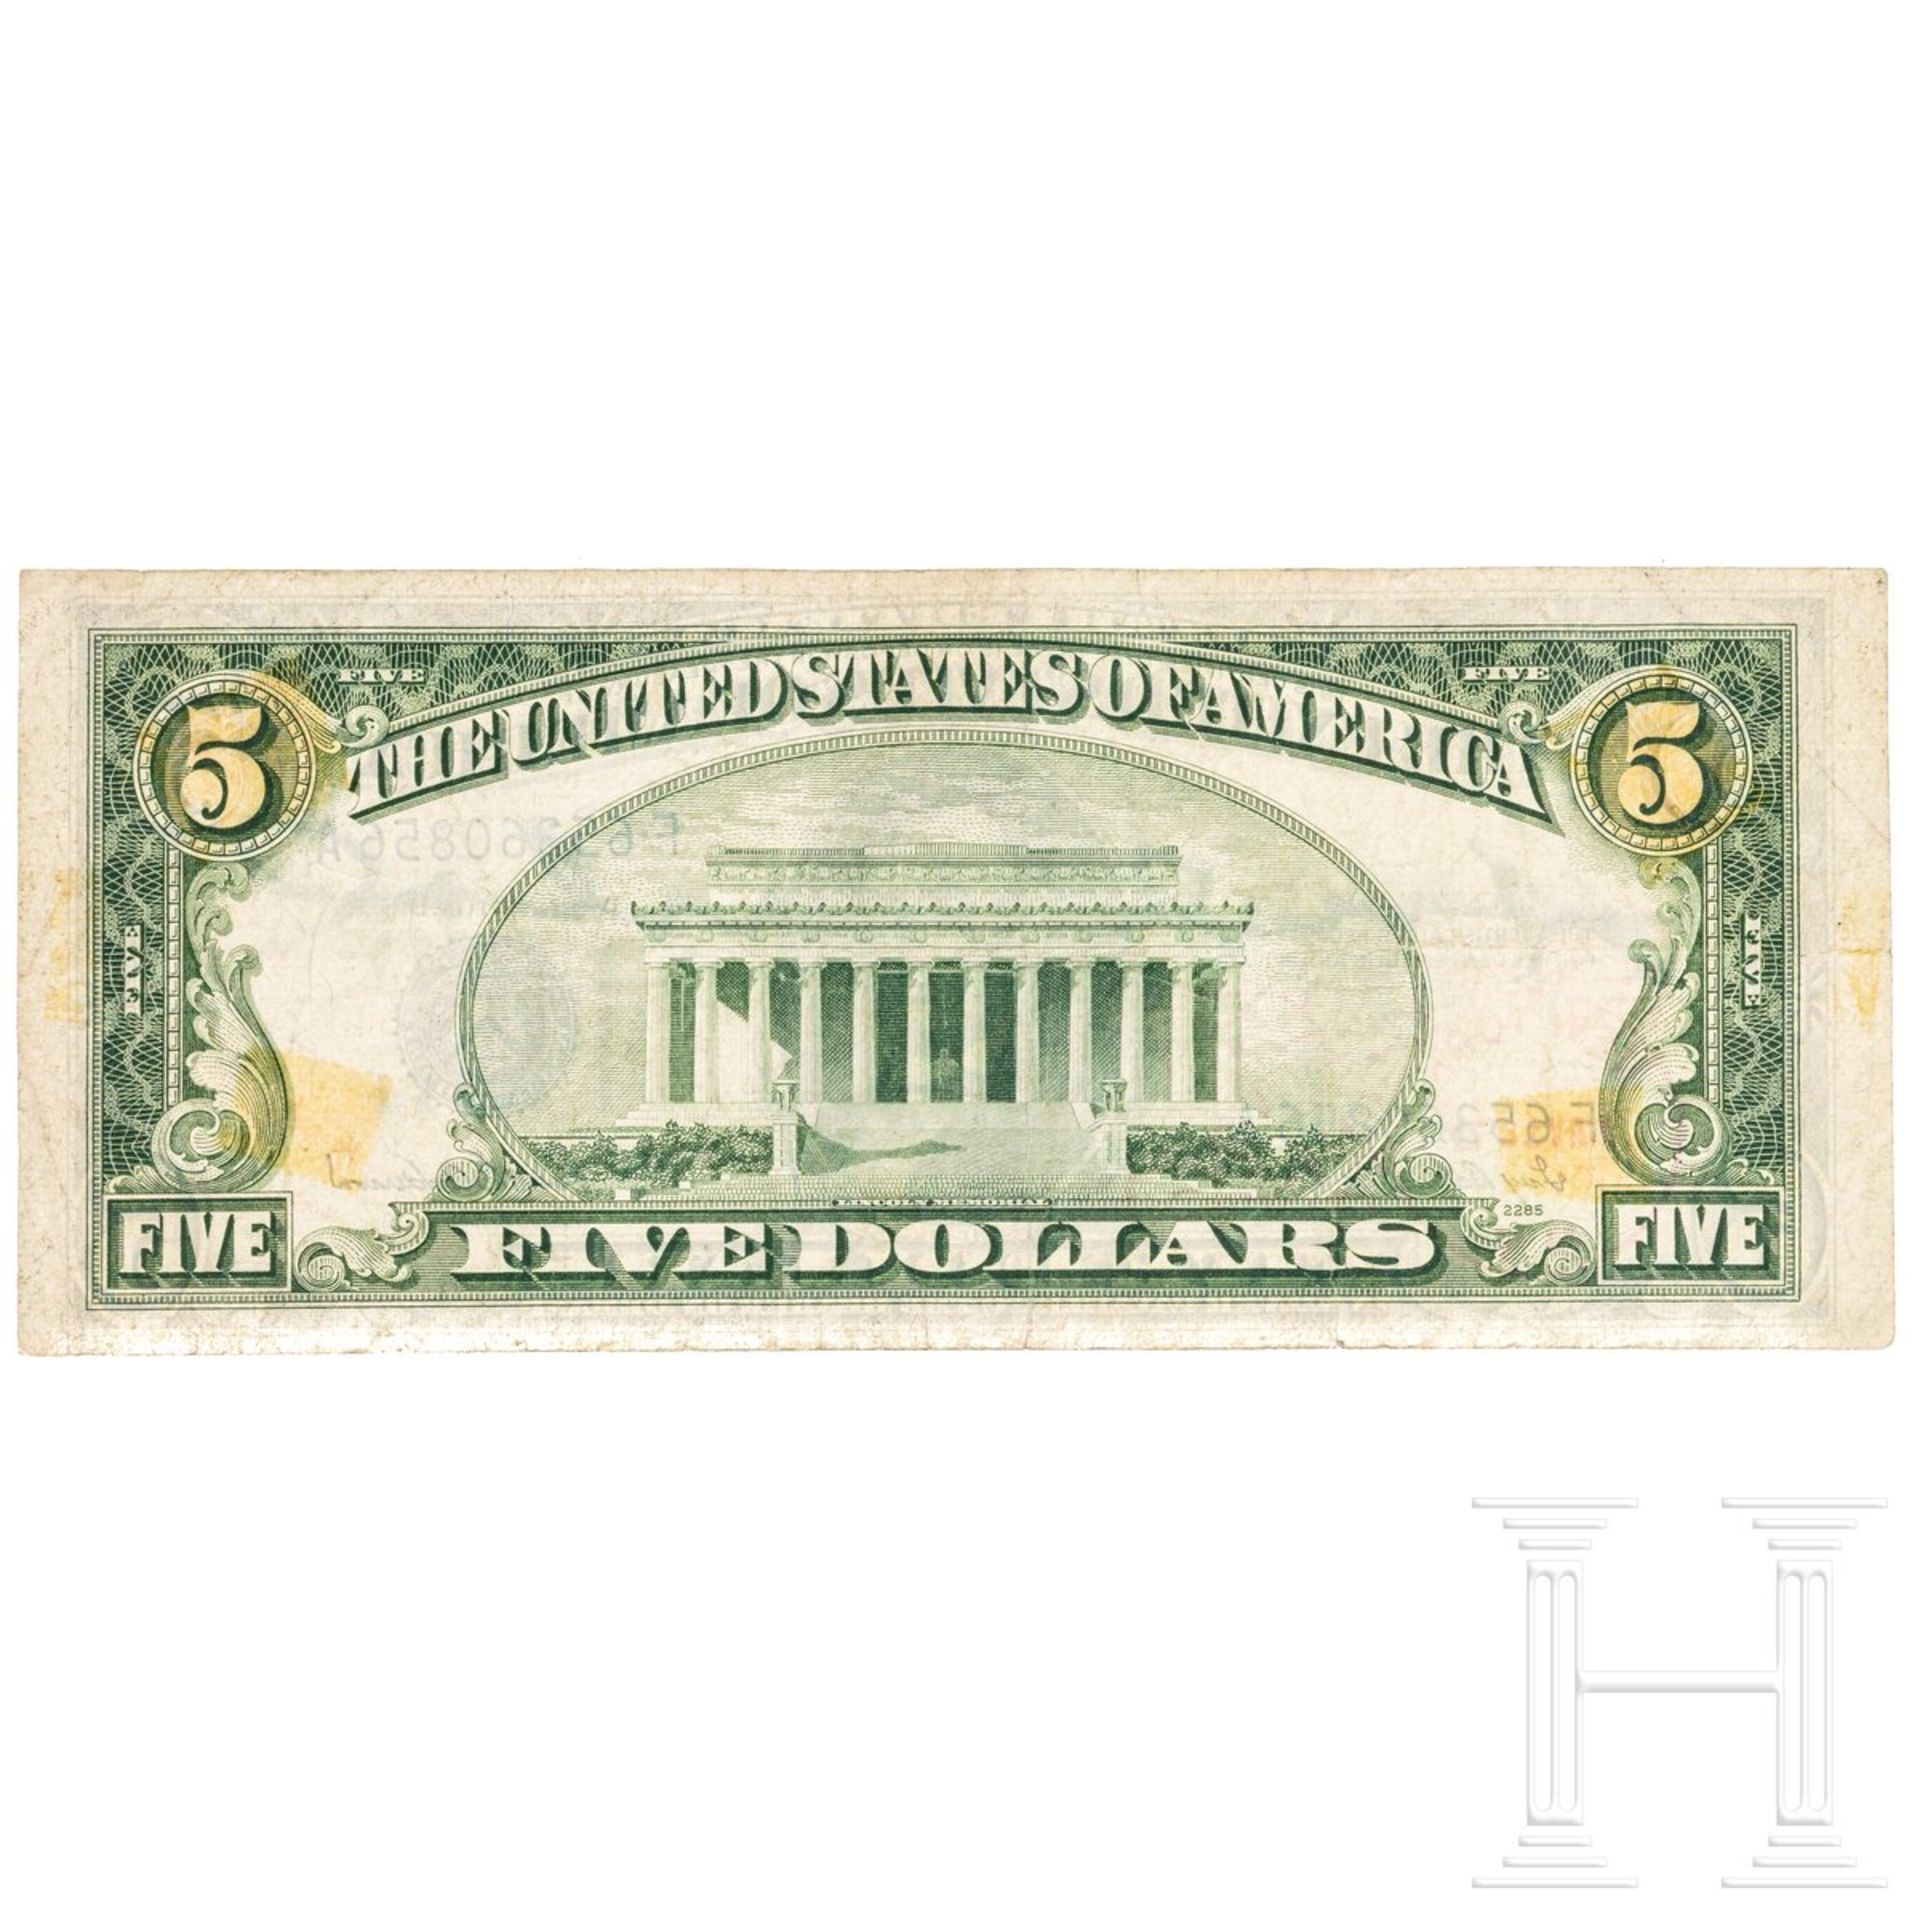 Fünf-Dollar-Schein, signiert "Andy Warhol", 1979 - Image 2 of 2